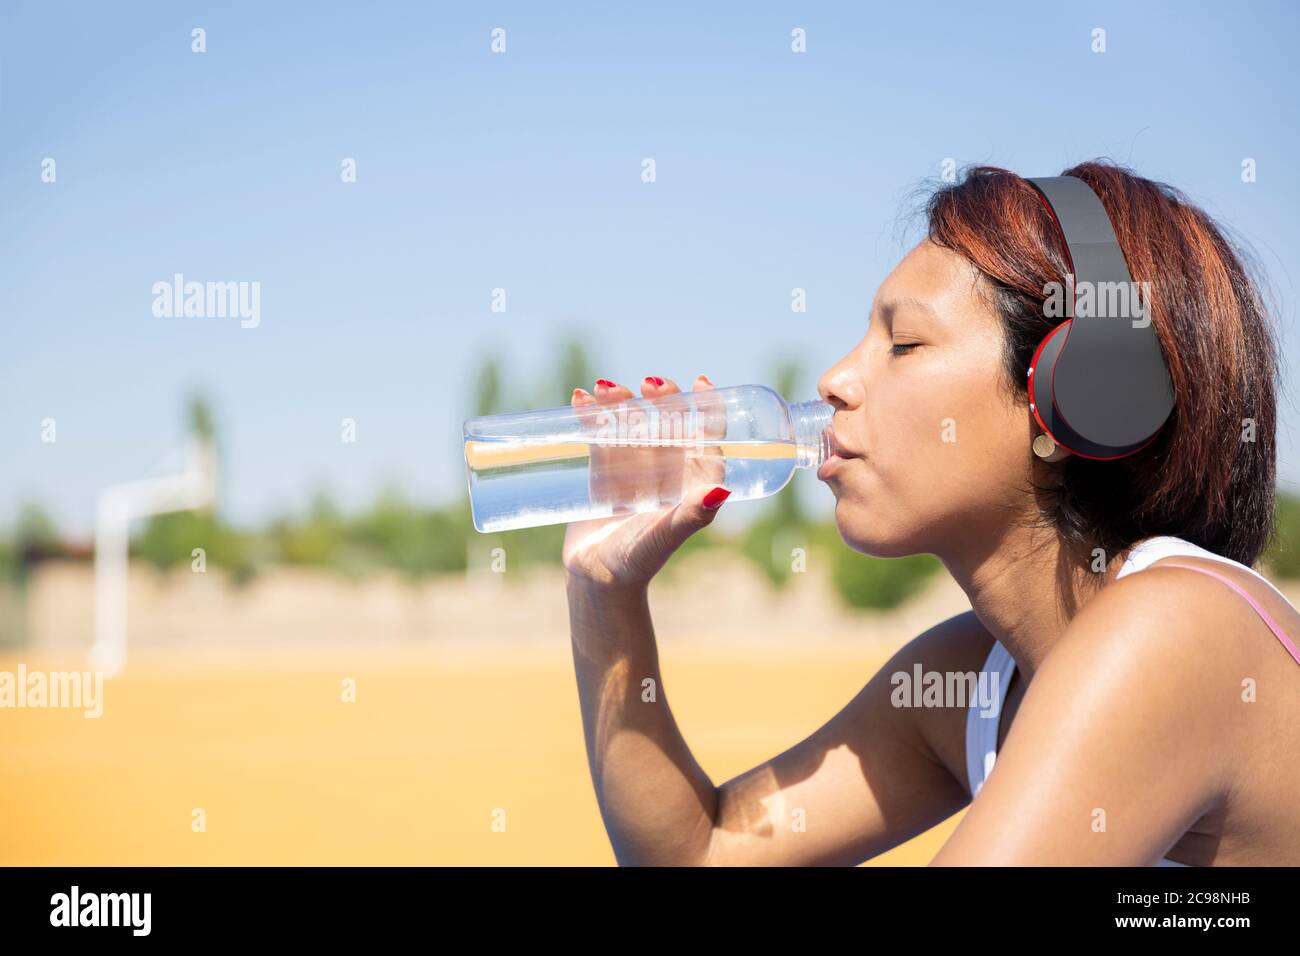 Gros plan de la femme qui boit de l'eau dans une bouteille en verre. Elle est à l'extérieur et porte un casque. Espace pour le texte. Concept de vie saine. Banque D'Images